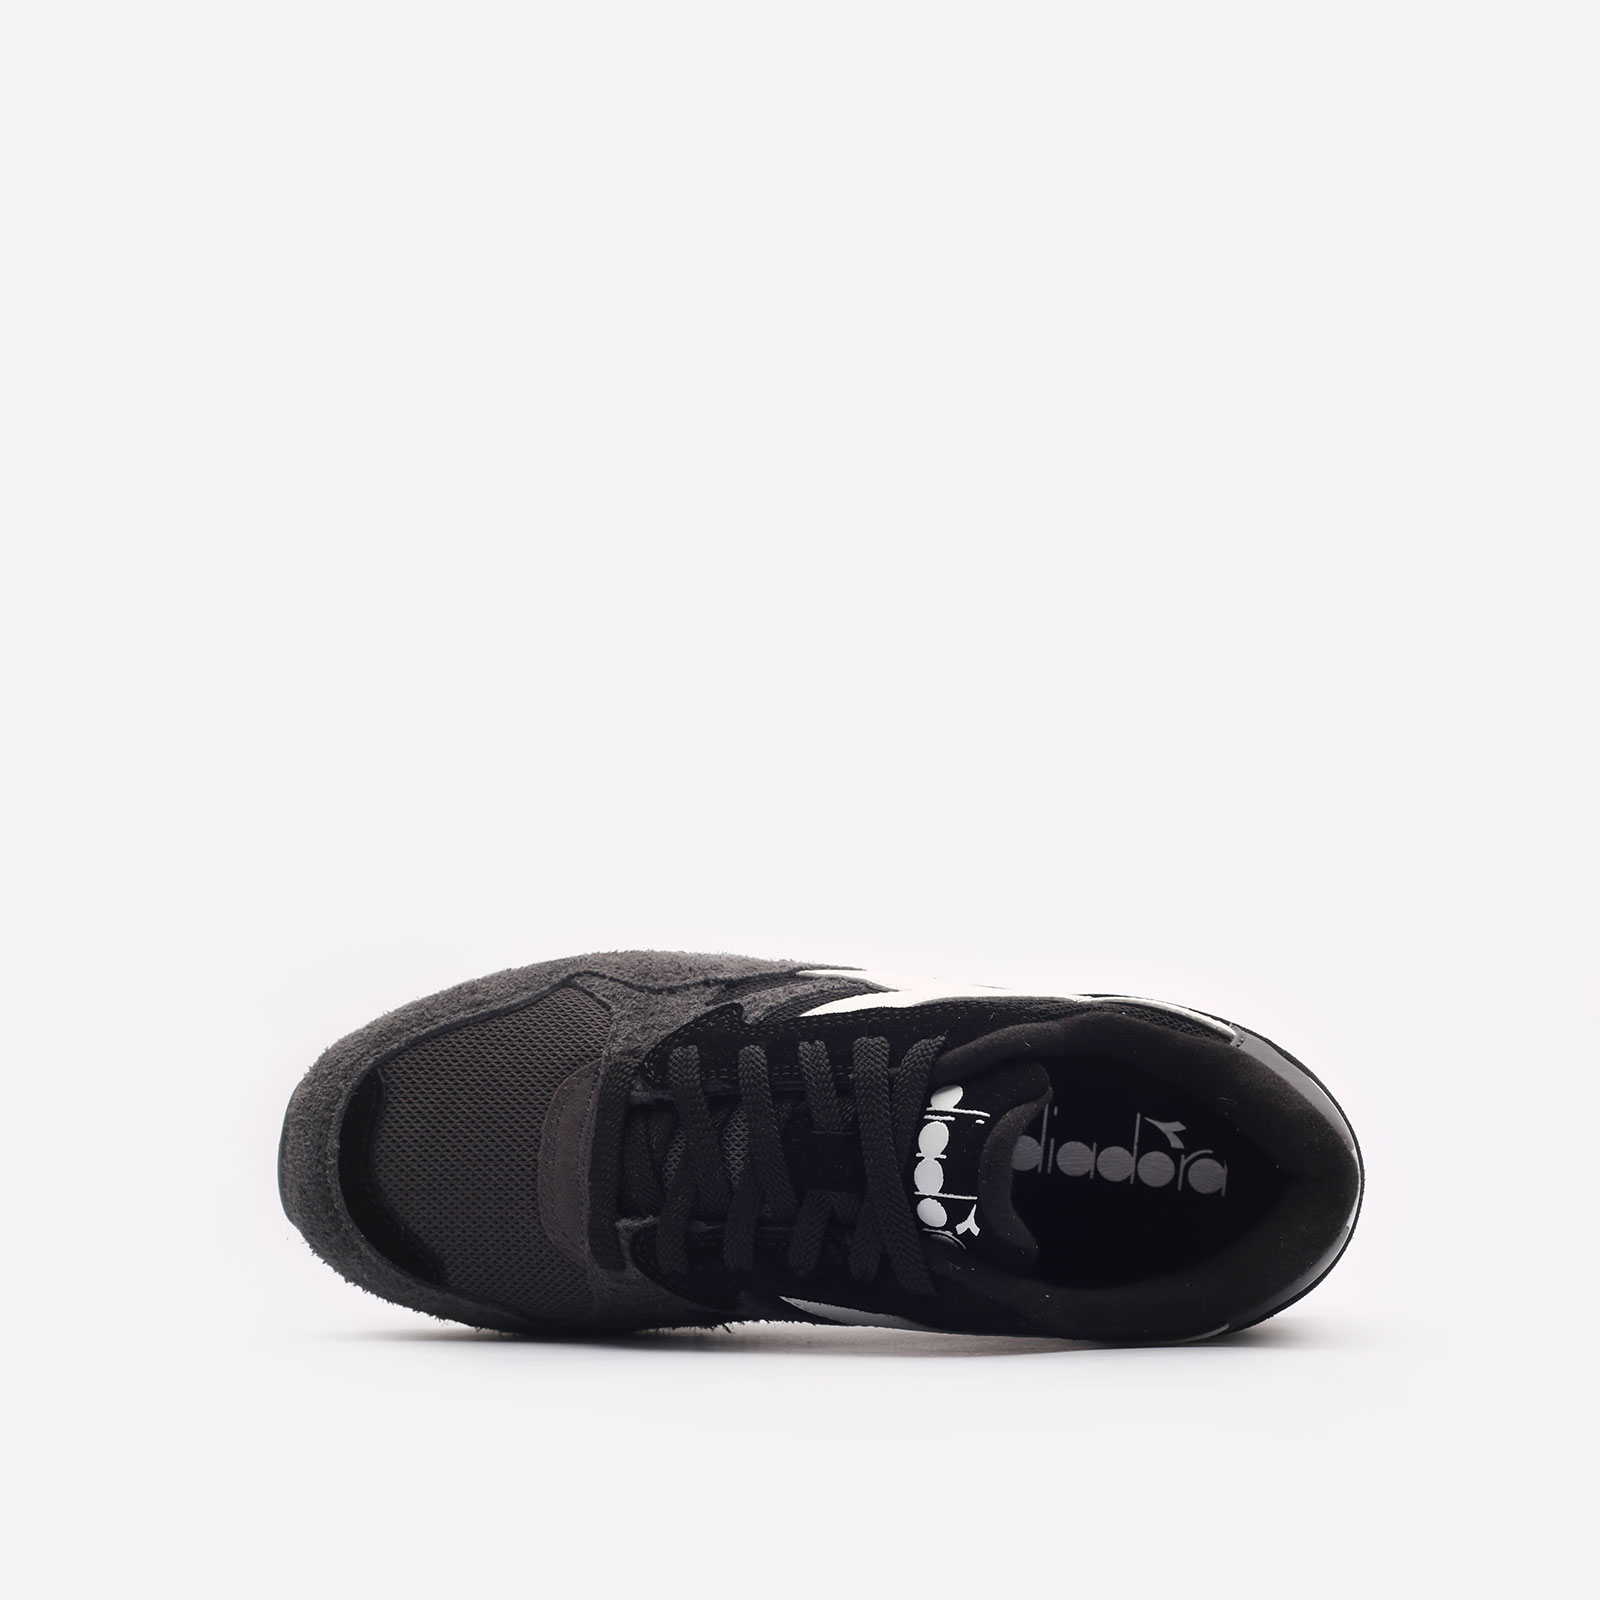 мужские черные кроссовки Diadora N902 Hairy Suede DR501179800 - цена, описание, фото 6